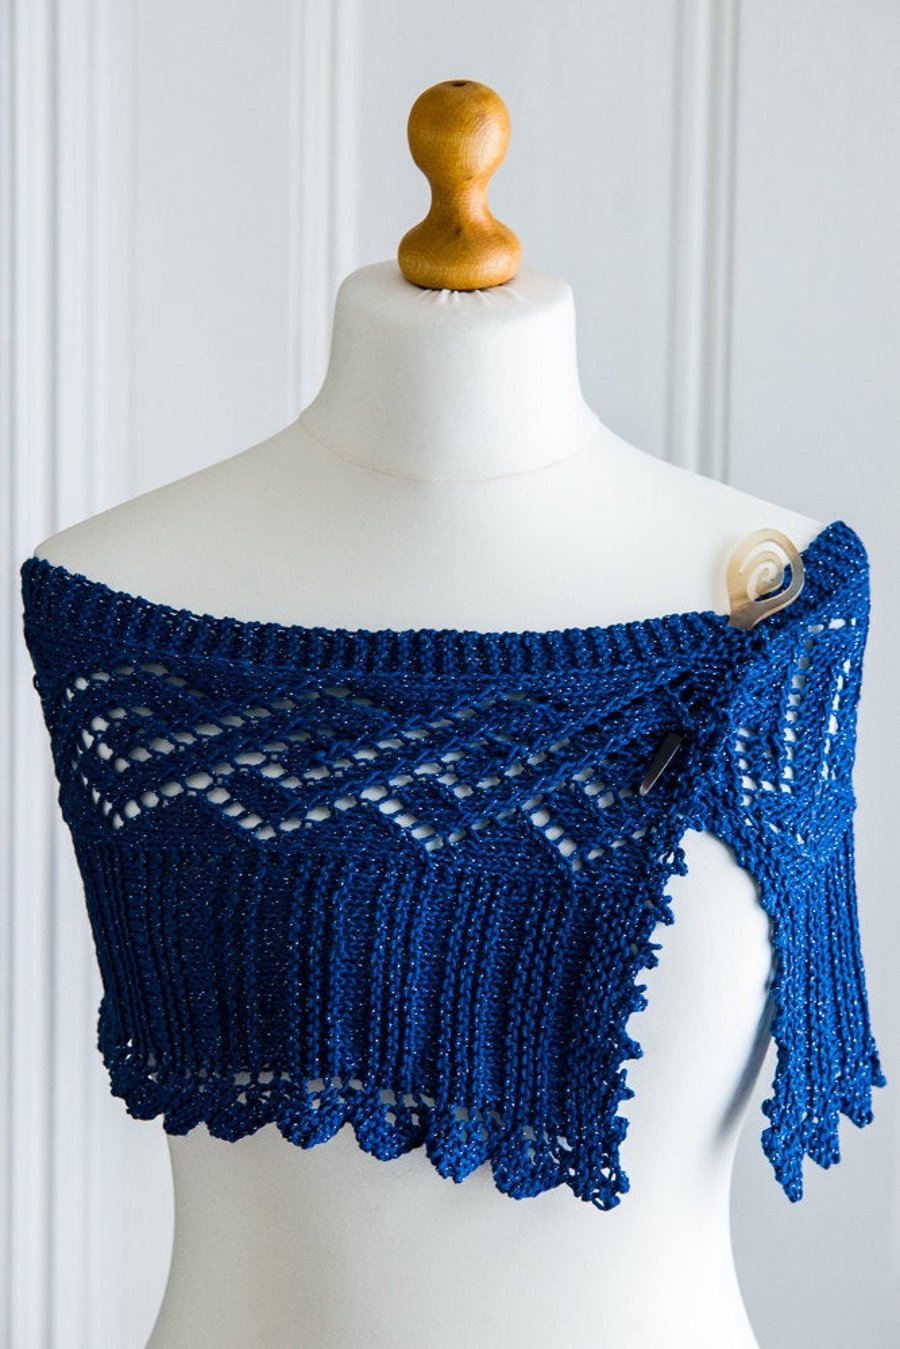 Shoulder wrap - hand knit summer shoulder wrap or shawl, in blue